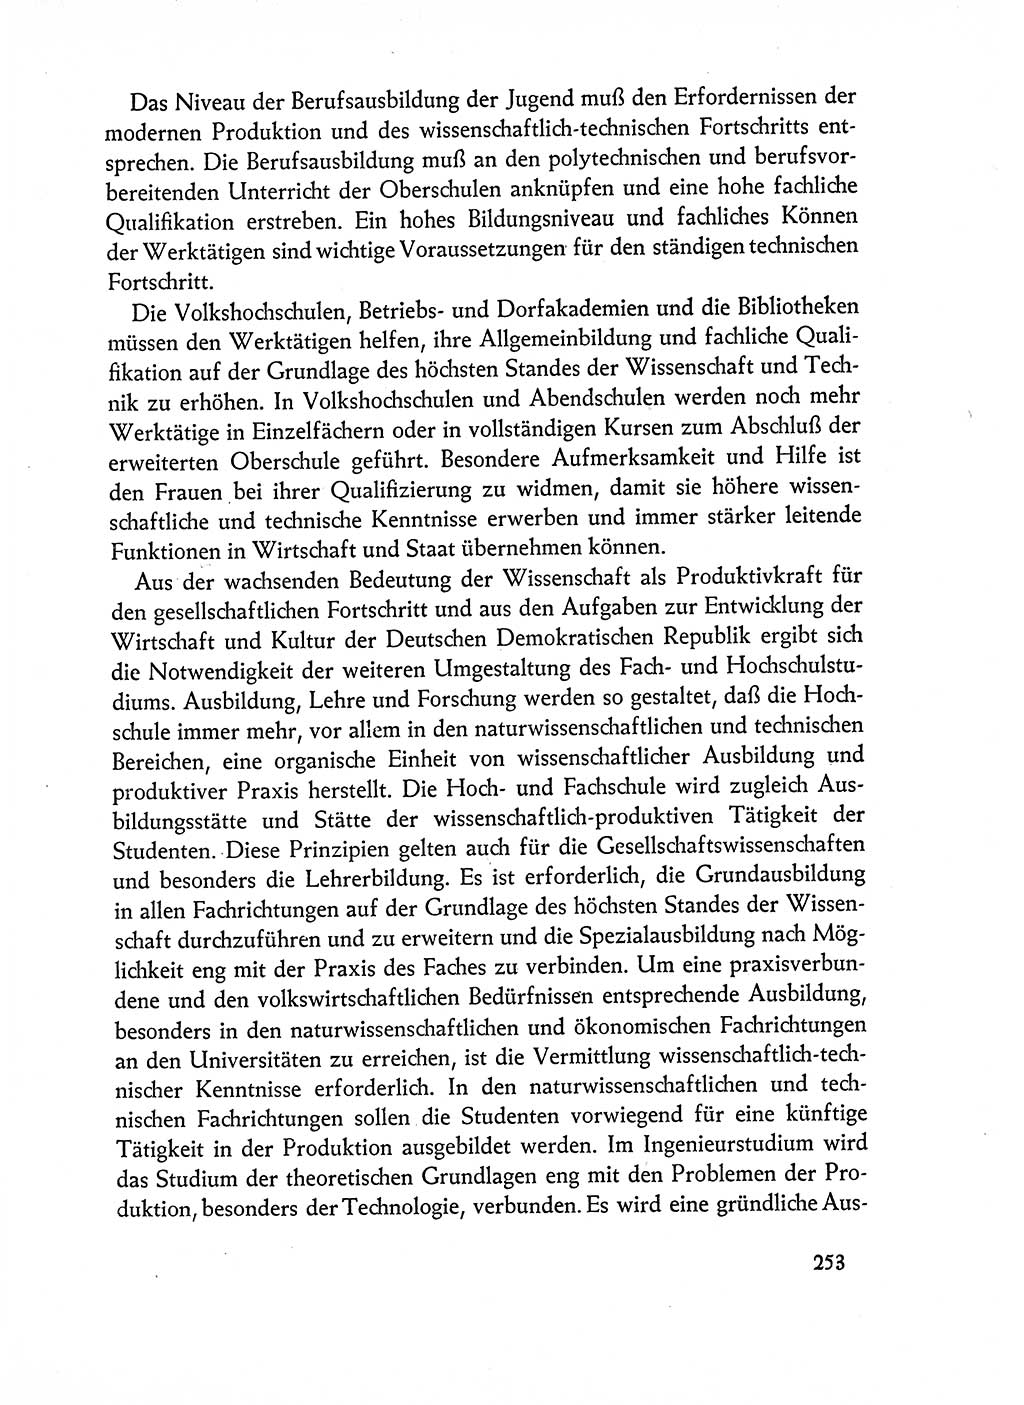 Dokumente der Sozialistischen Einheitspartei Deutschlands (SED) [Deutsche Demokratische Republik (DDR)] 1962-1963, Seite 253 (Dok. SED DDR 1962-1963, S. 253)